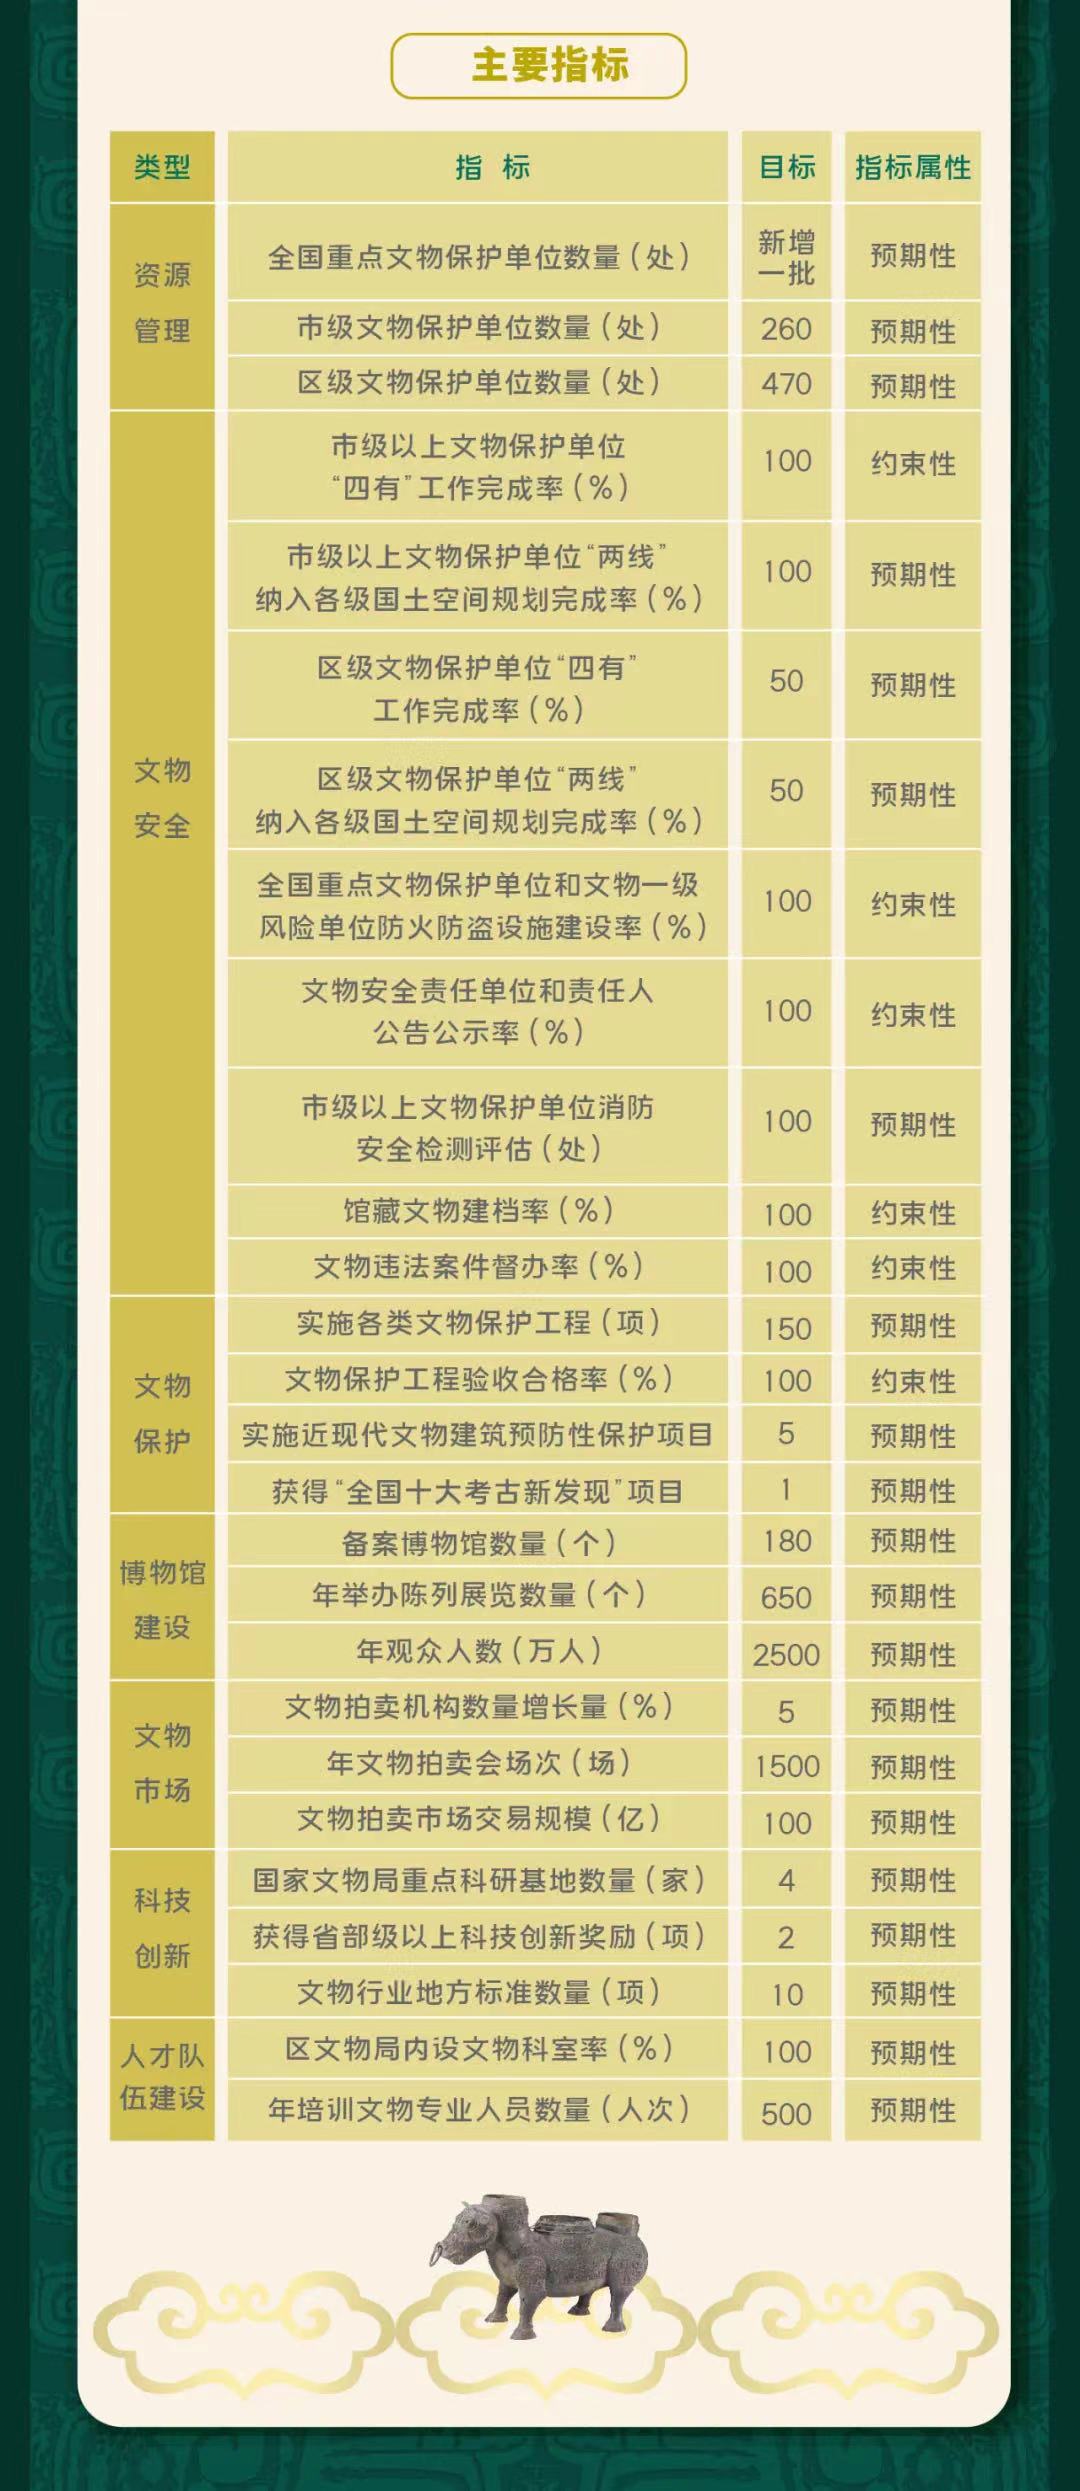 一图读懂上海市“十四五”文物保护利用规划4.jpg